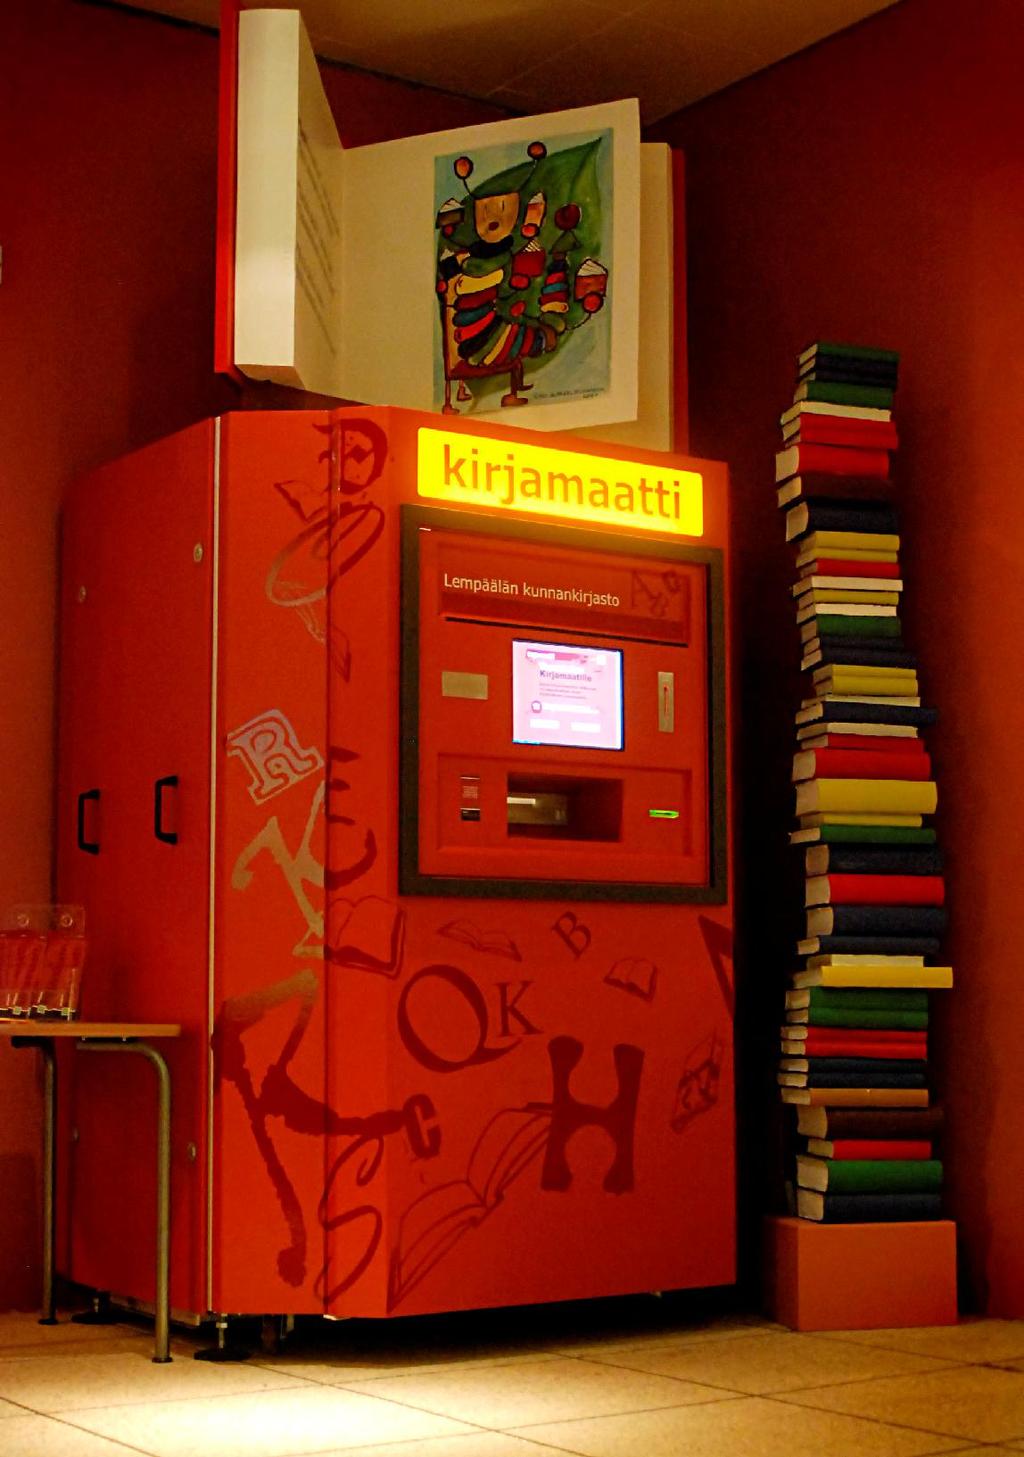 Kirjamaatti on Axiell Kirjastot Oy:n markkinoima kirjastoautomaatti, joka lainaa kokoelmastaan kirjoja, ottaa vastaan palautuksia ja järjestää palautetut kirjat takaisin kokoelmaansa.